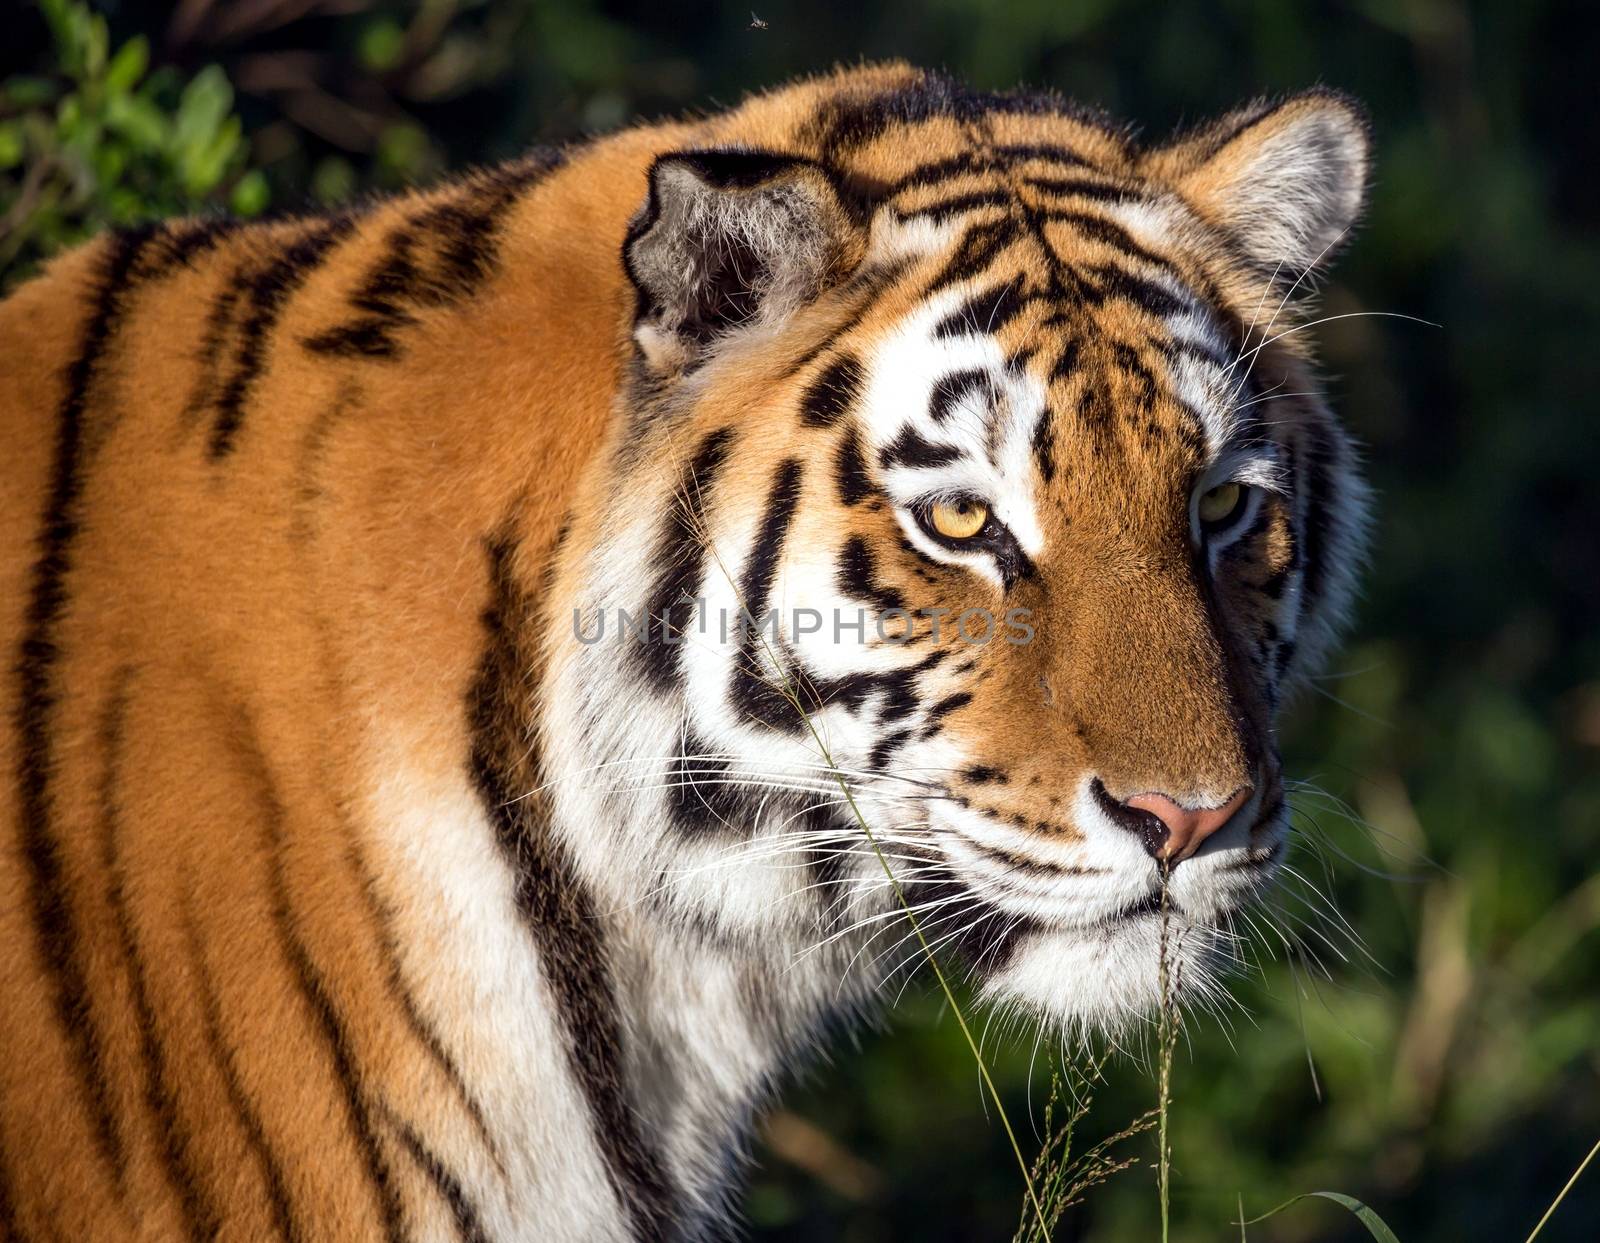 Tiger Wild Cat by fouroaks